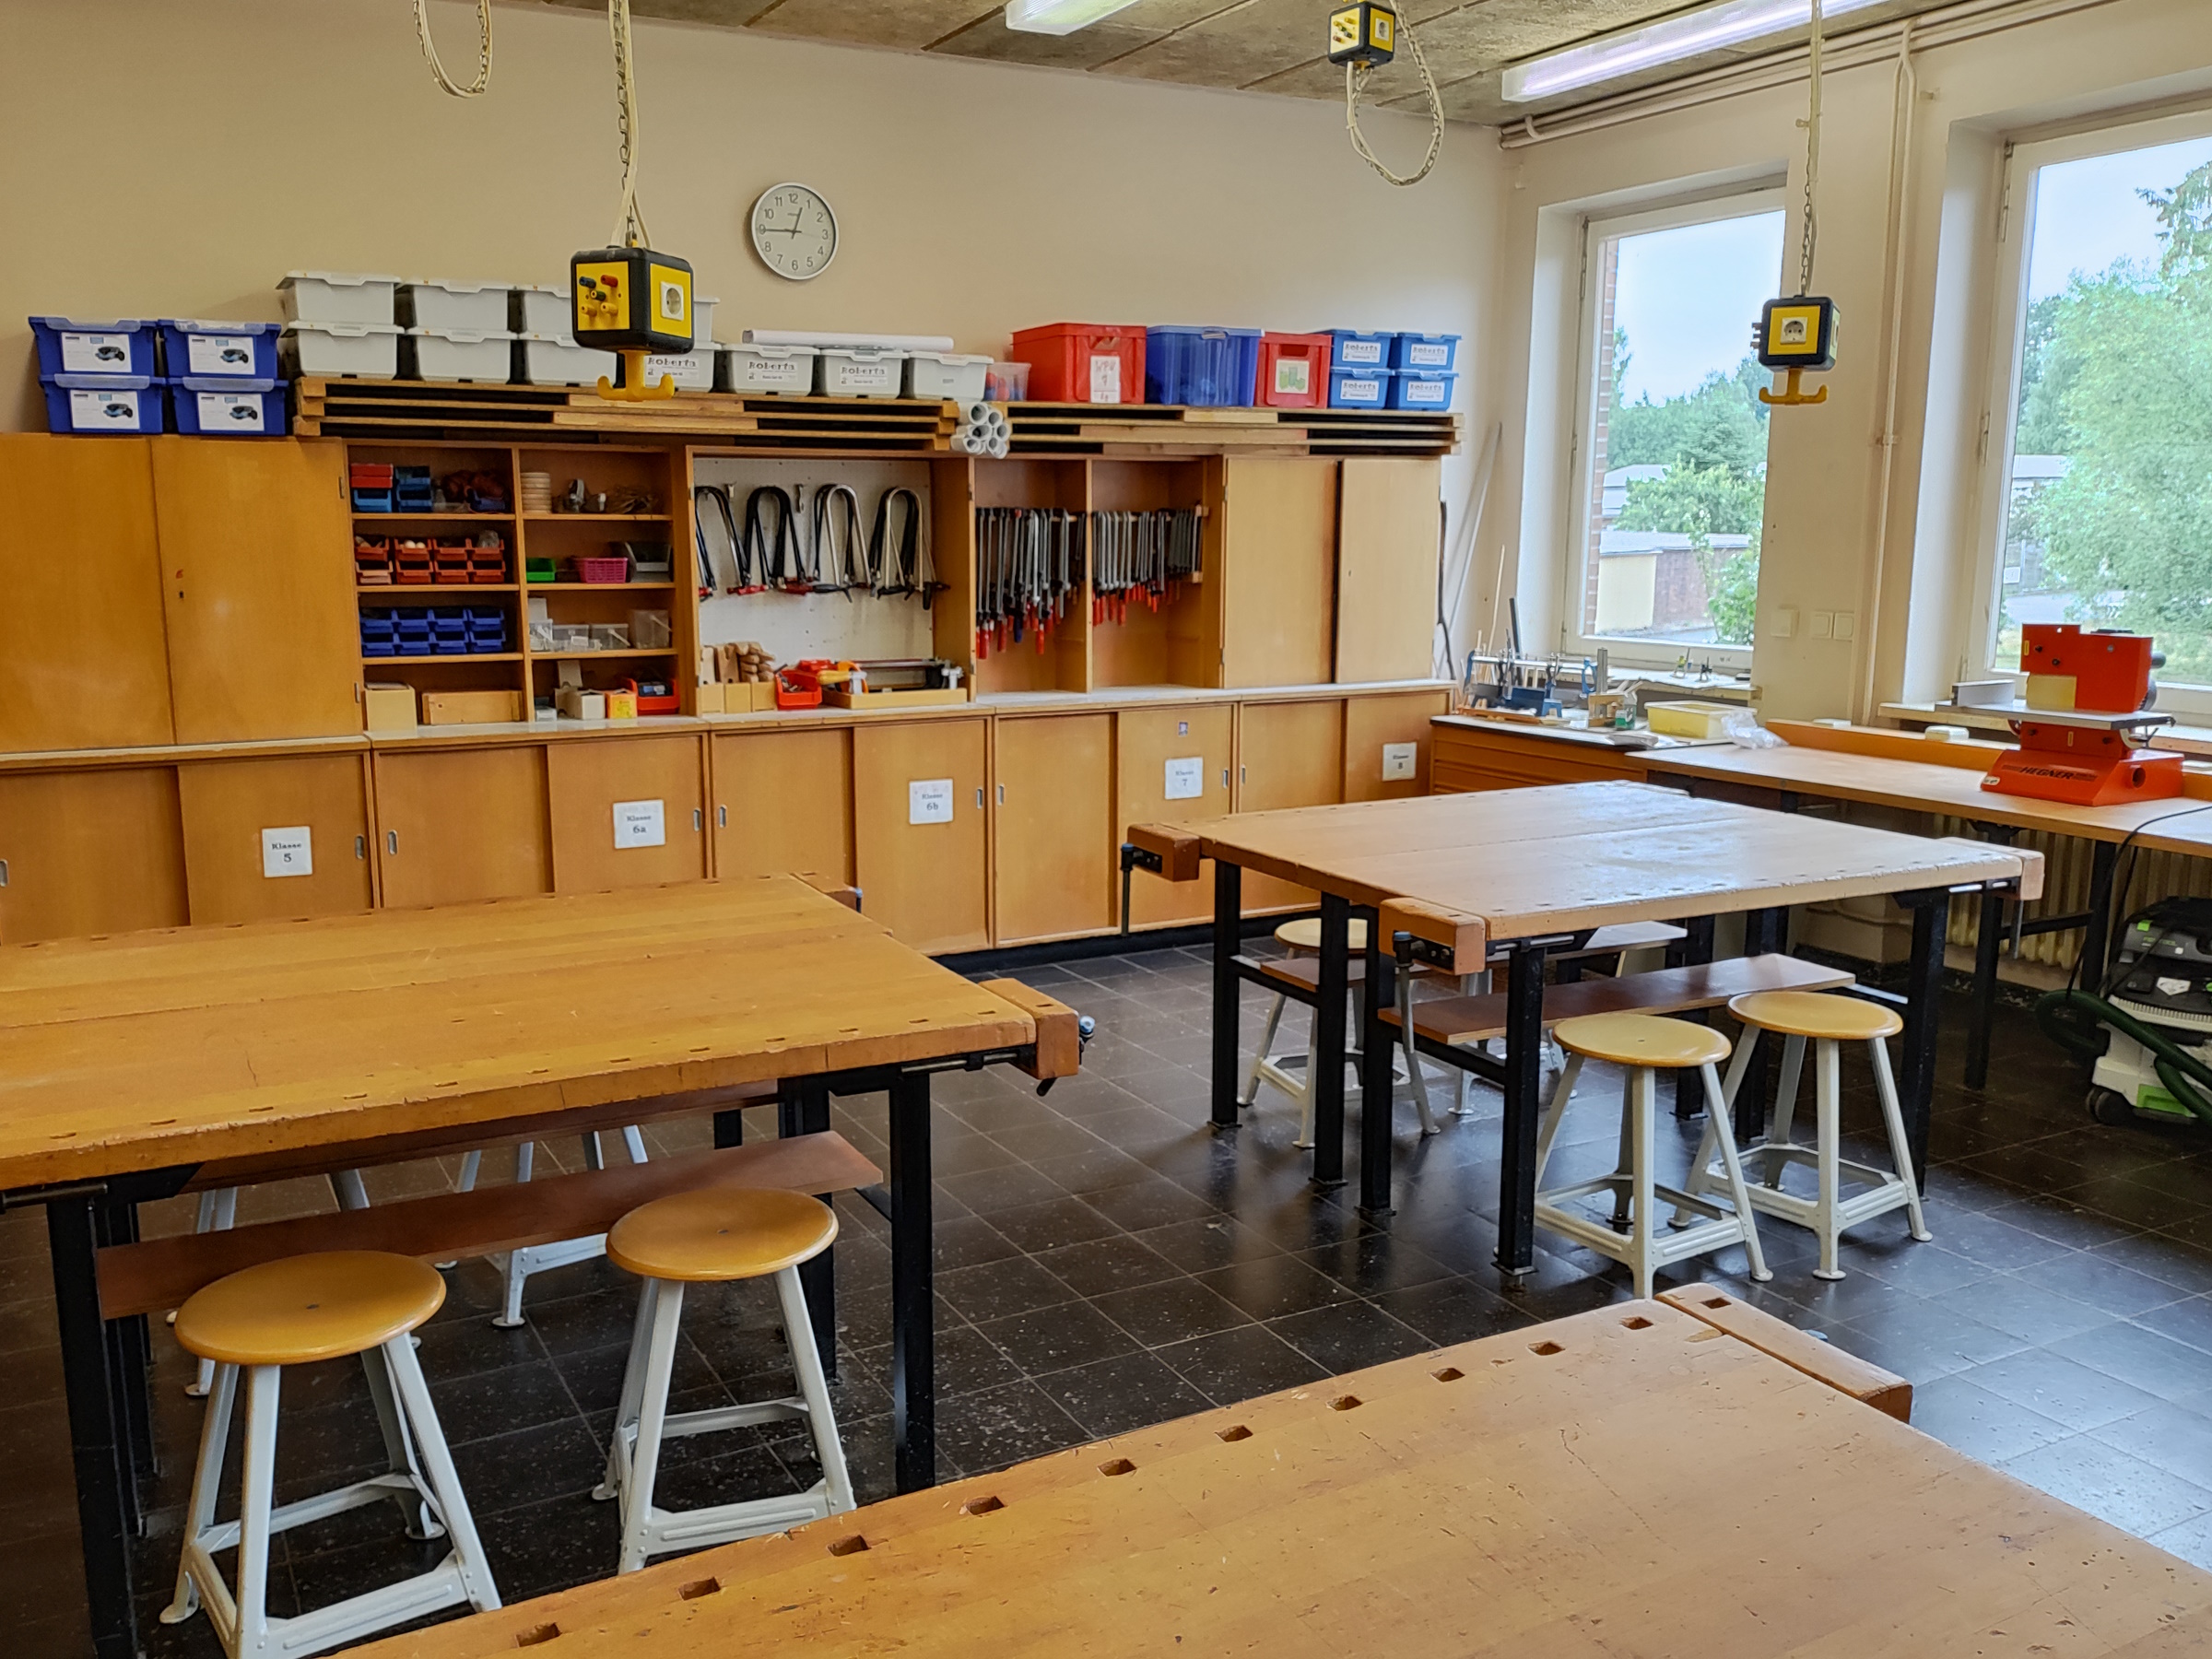 Blick in den Technikraum einer Schule. Werkbänke und Schränke mit Werkzeugen und Kisten